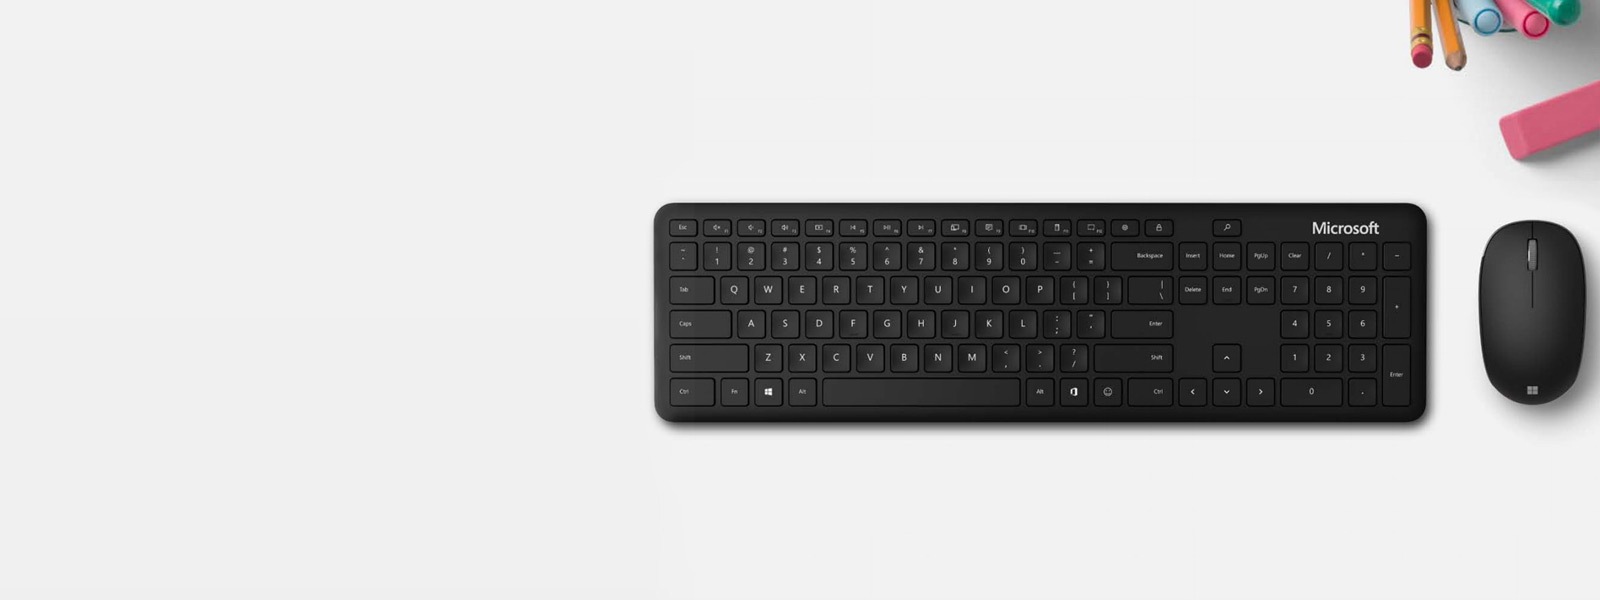 Microsoft Bluetooth Keyboard е поставена до Microsoft Bluetooth Mouse на бюро с писалка, маркер и гума
